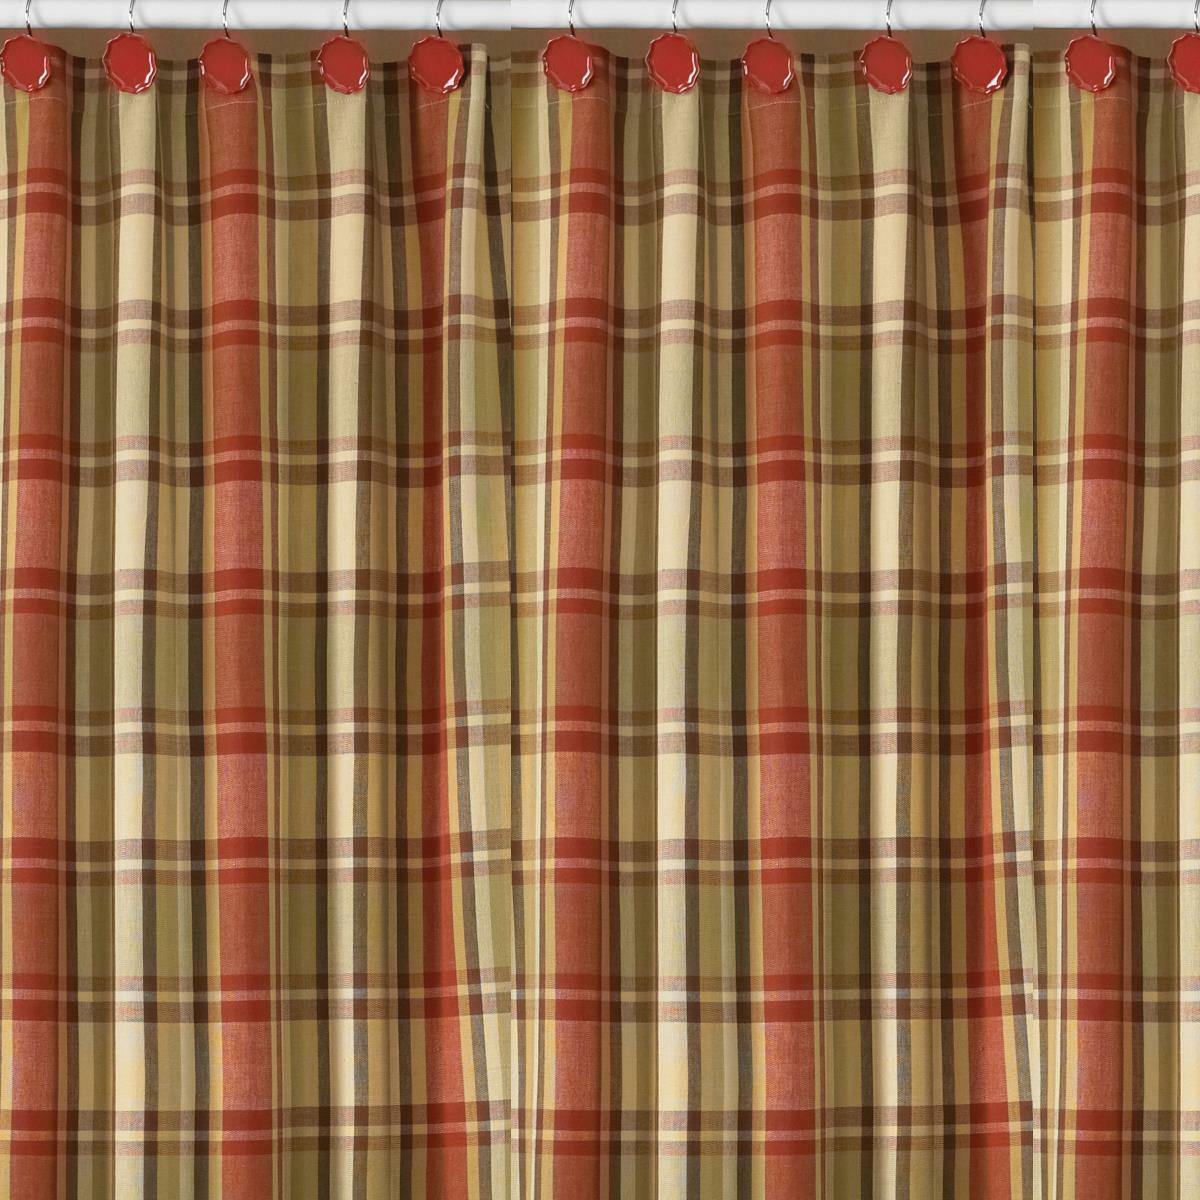 Heartfelt Shower Curtain - 72" x 72" Park Designs - The Fox Decor